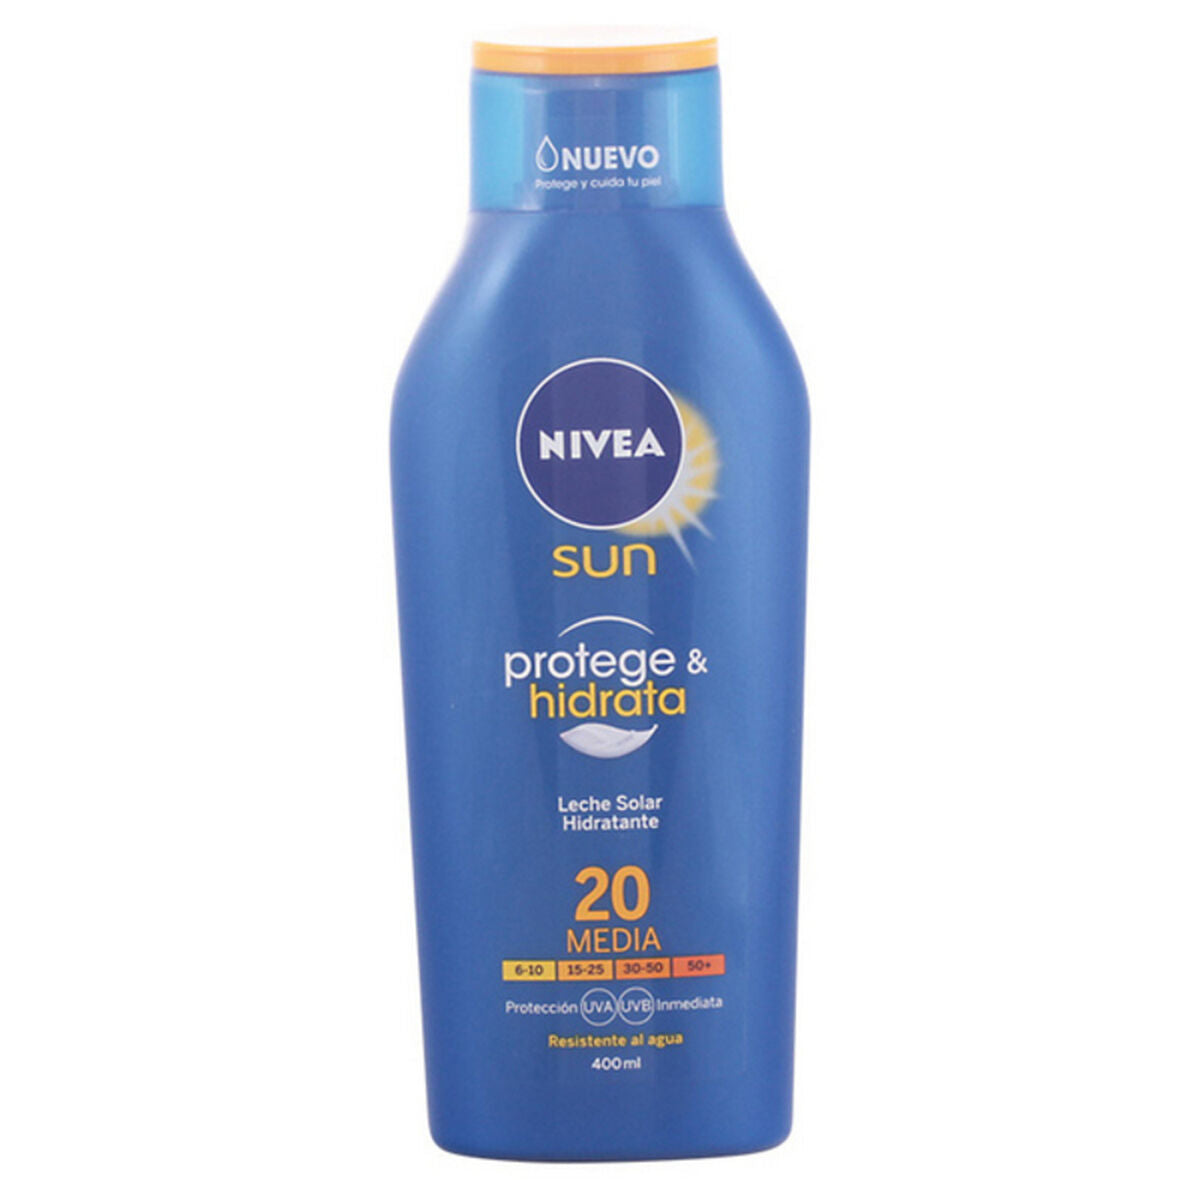 Sun Milk Protege & Hidrata Nivea SPF 20 (400 ml) 20 (400 ml)-0